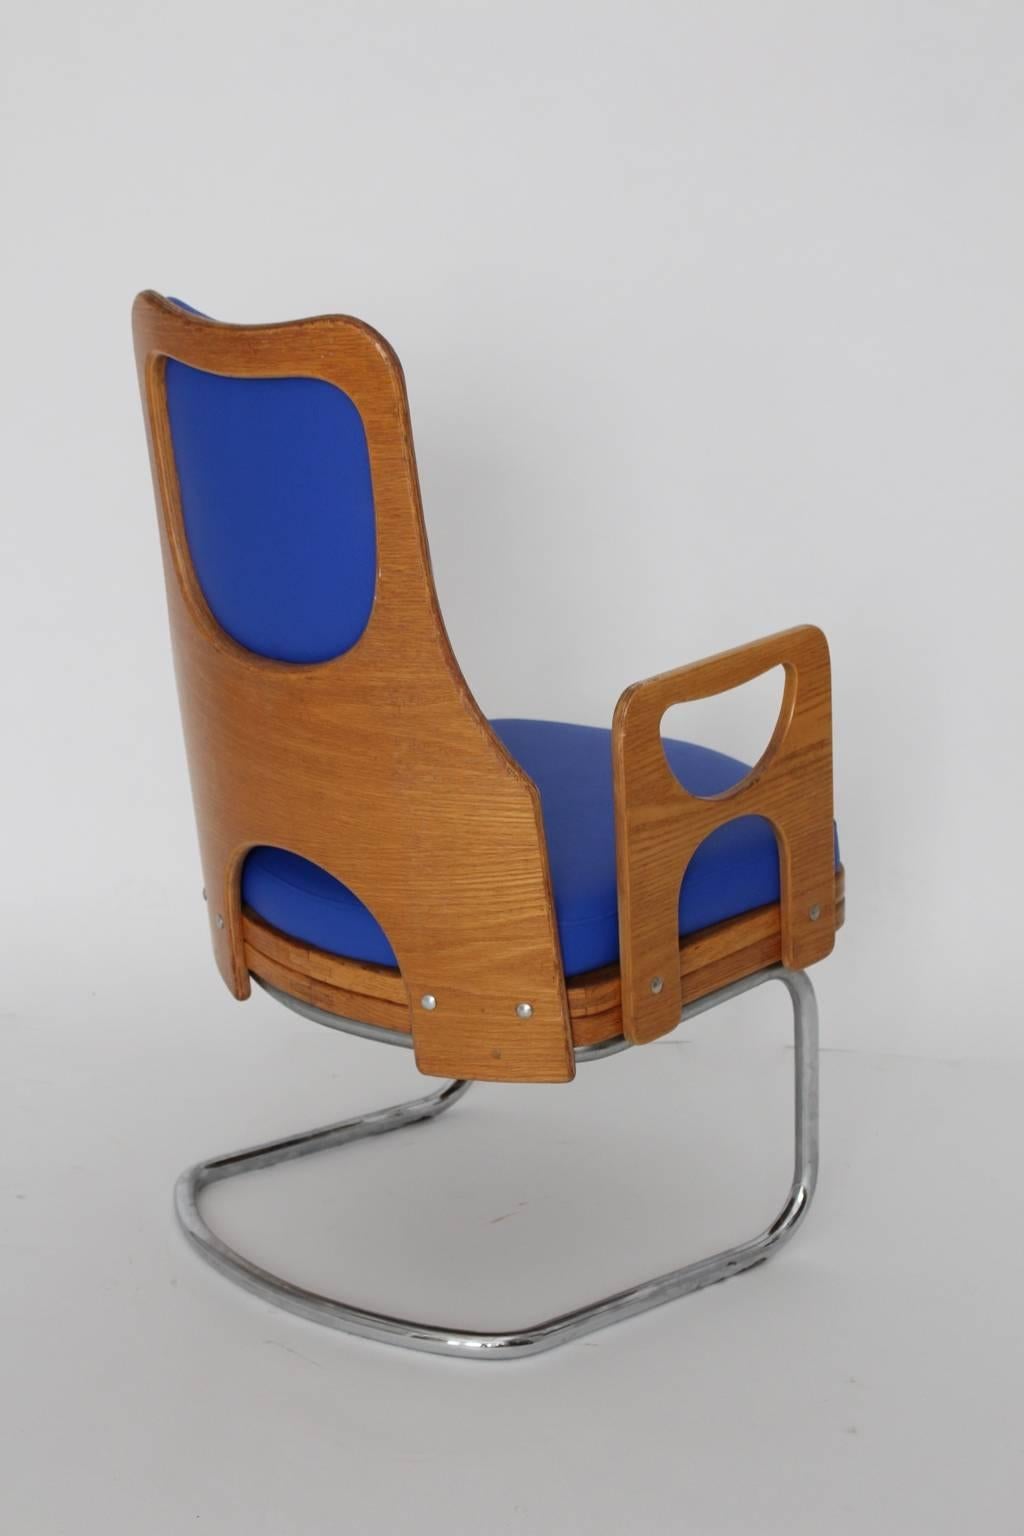 Space Age blauer Sessel oder Lounge Chair oder Clubsessel aus Teakholz und verchromtem Stahlrohr.
Die Polsterung ist mit Kunstleder in einem kräftigen blauen Farbton bezogen, der an Kornblumen erinnert.
Sehr guter Zustand mit geringen Alters- und